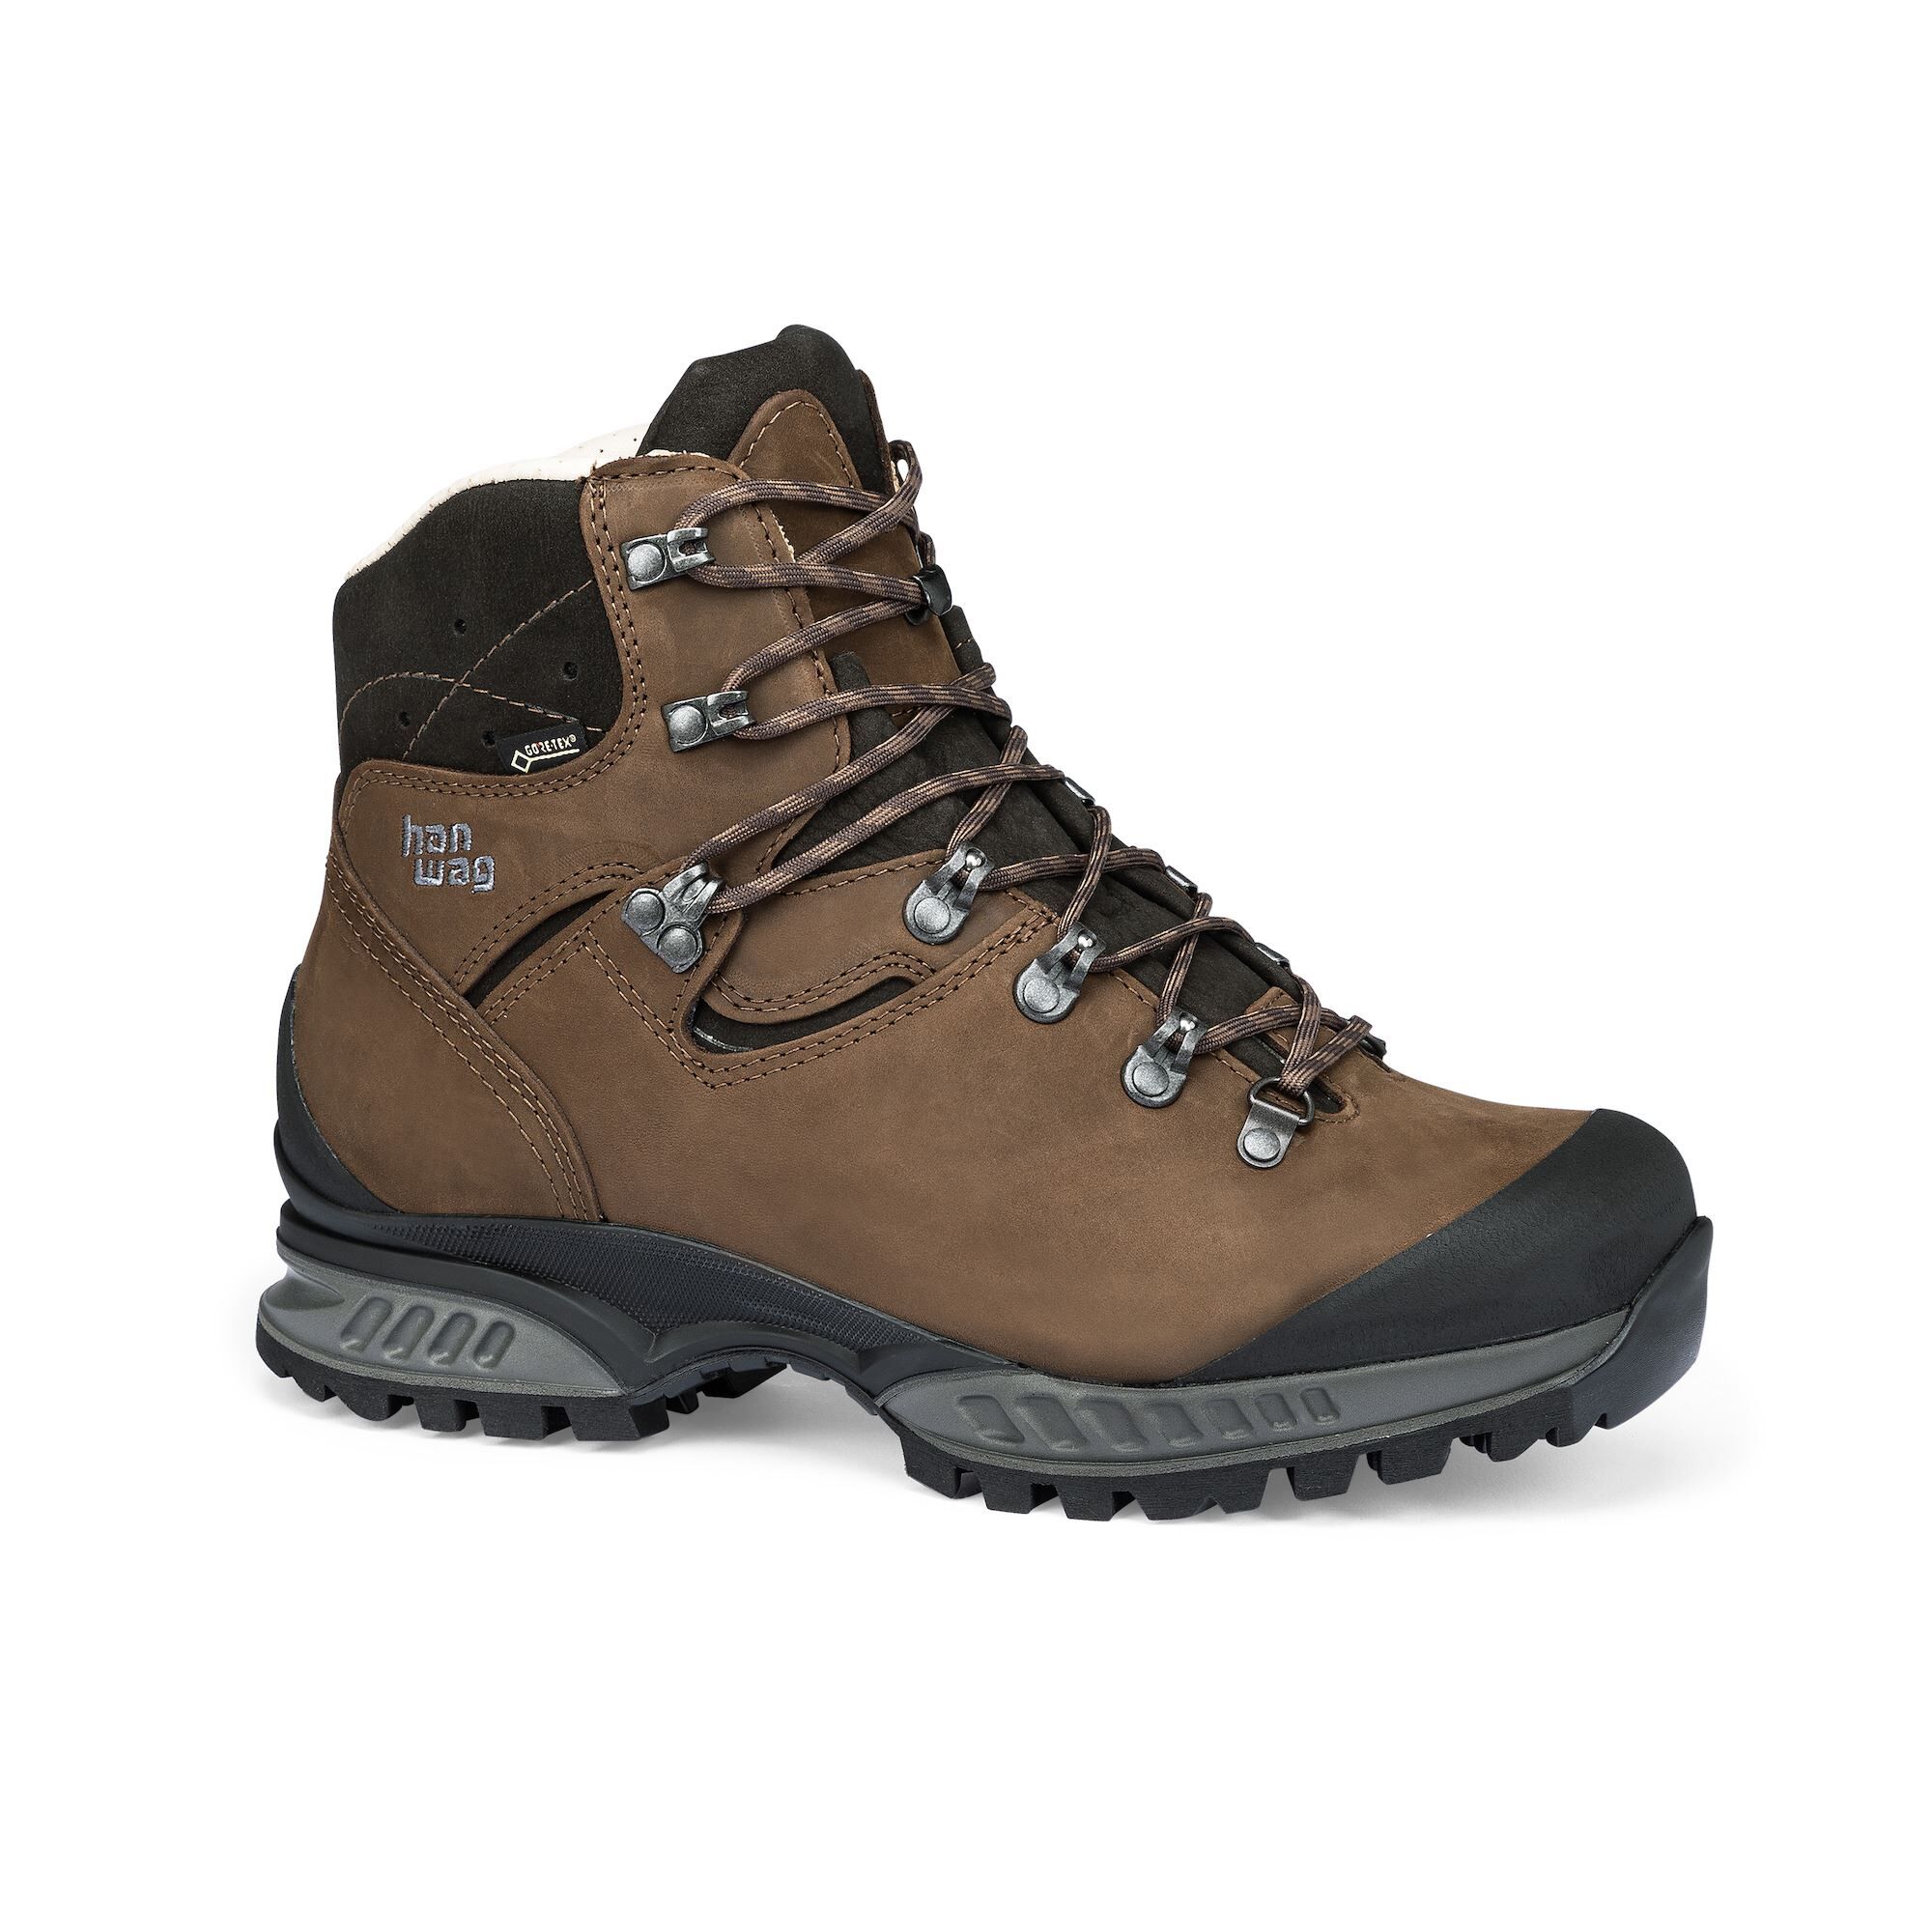 Hanwag Tatra II GTX - Hiking Boots - Men's